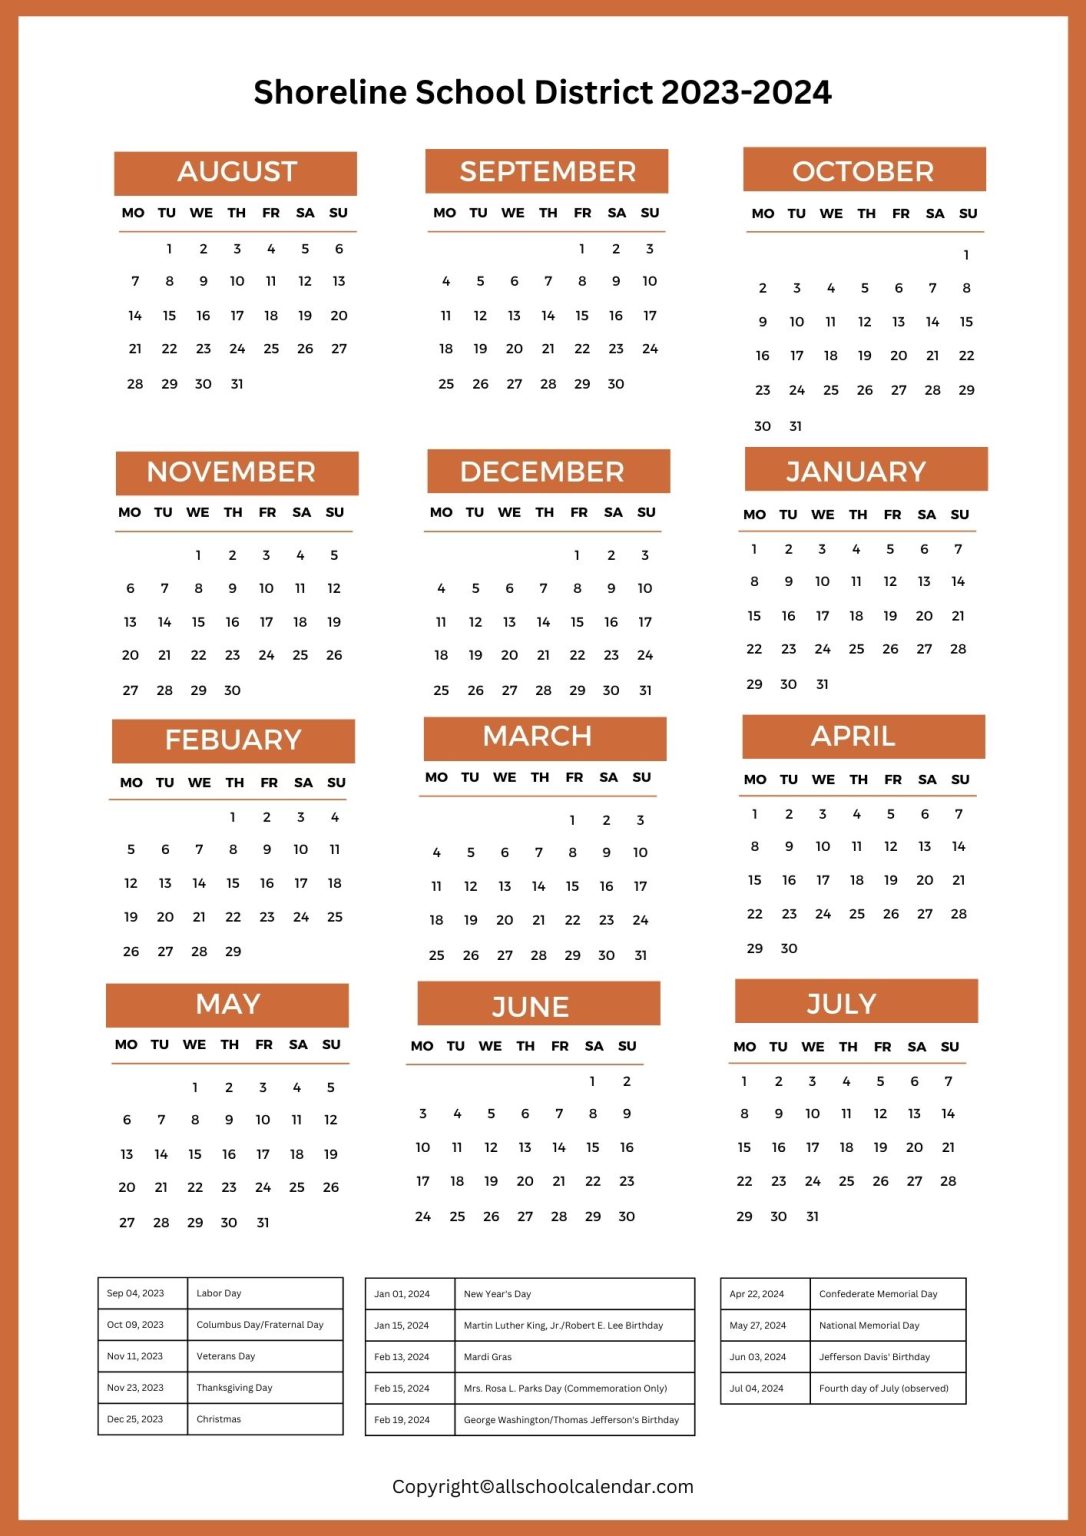 shoreline-school-district-calendar-and-bell-schedule-2023-24